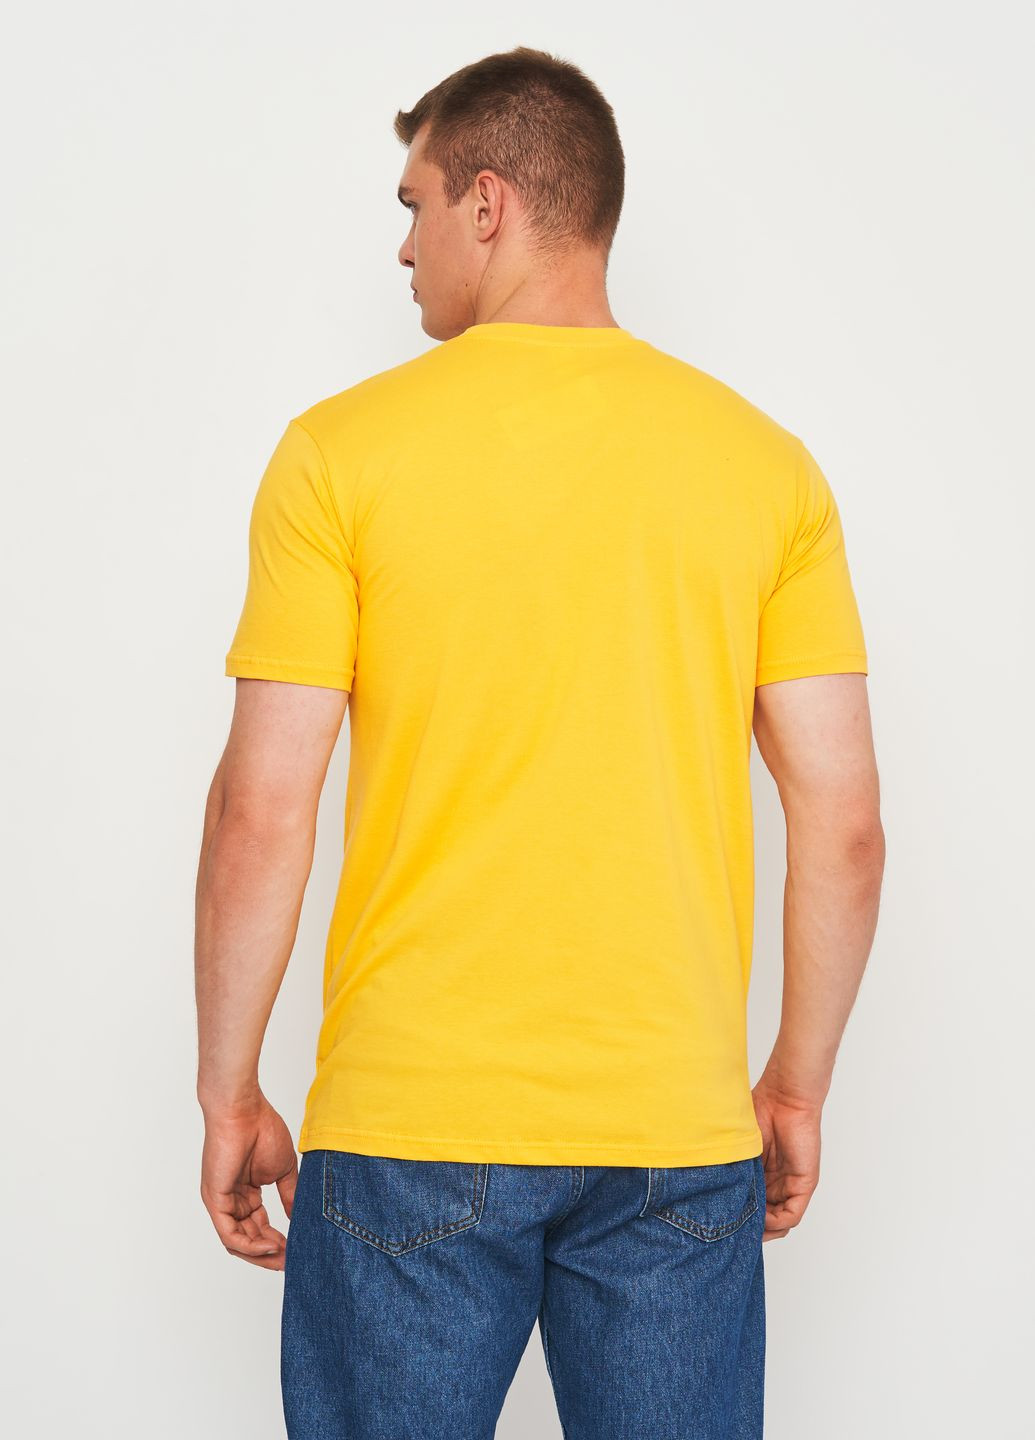 Жовта футболка для чоловіків з коротким рукавом Роза